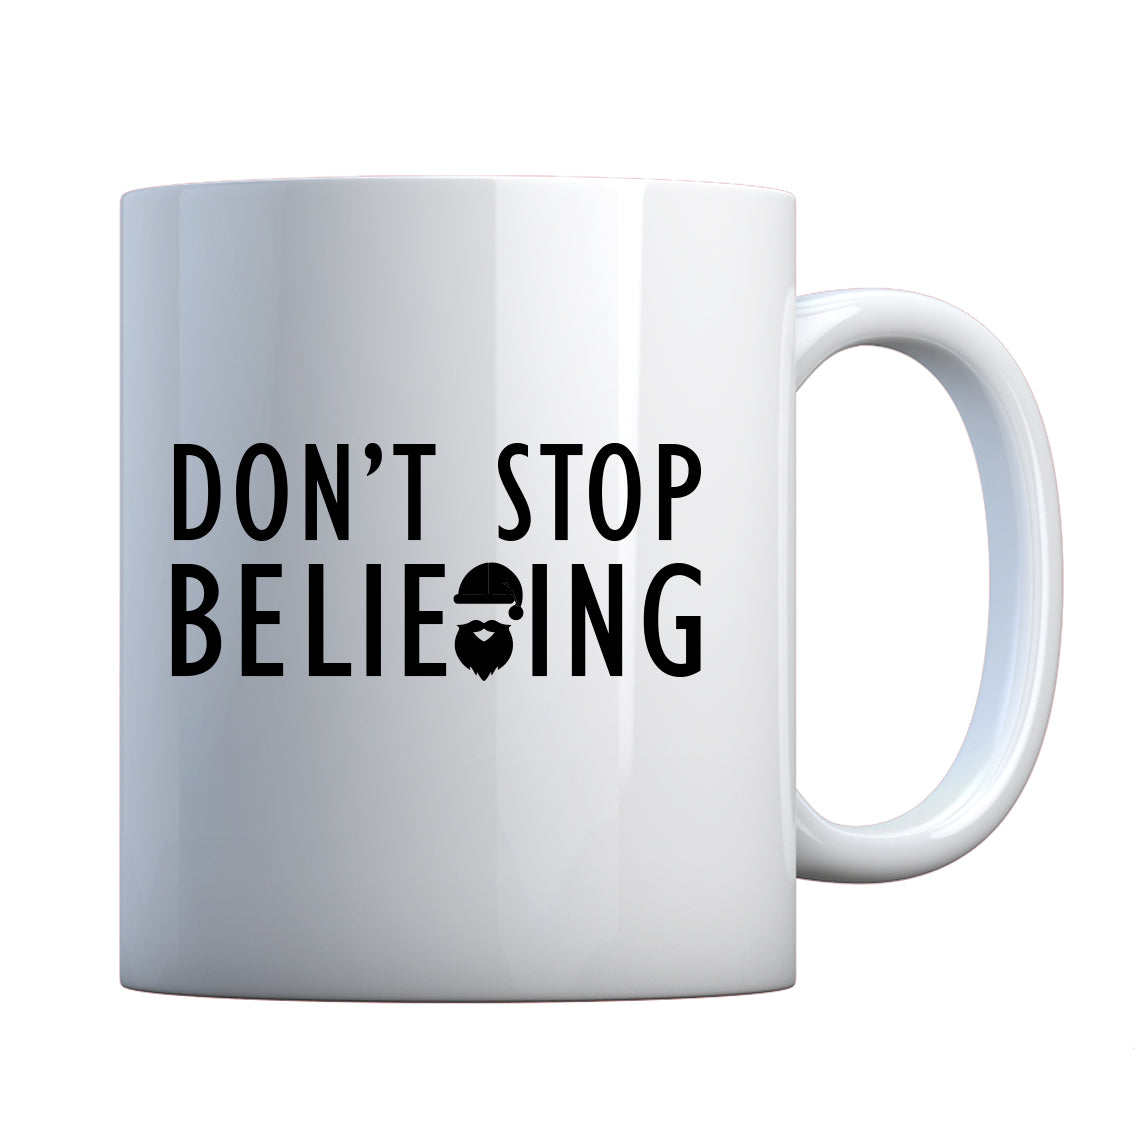 Mug Don't Stop Believing Ceramic Gift Mug